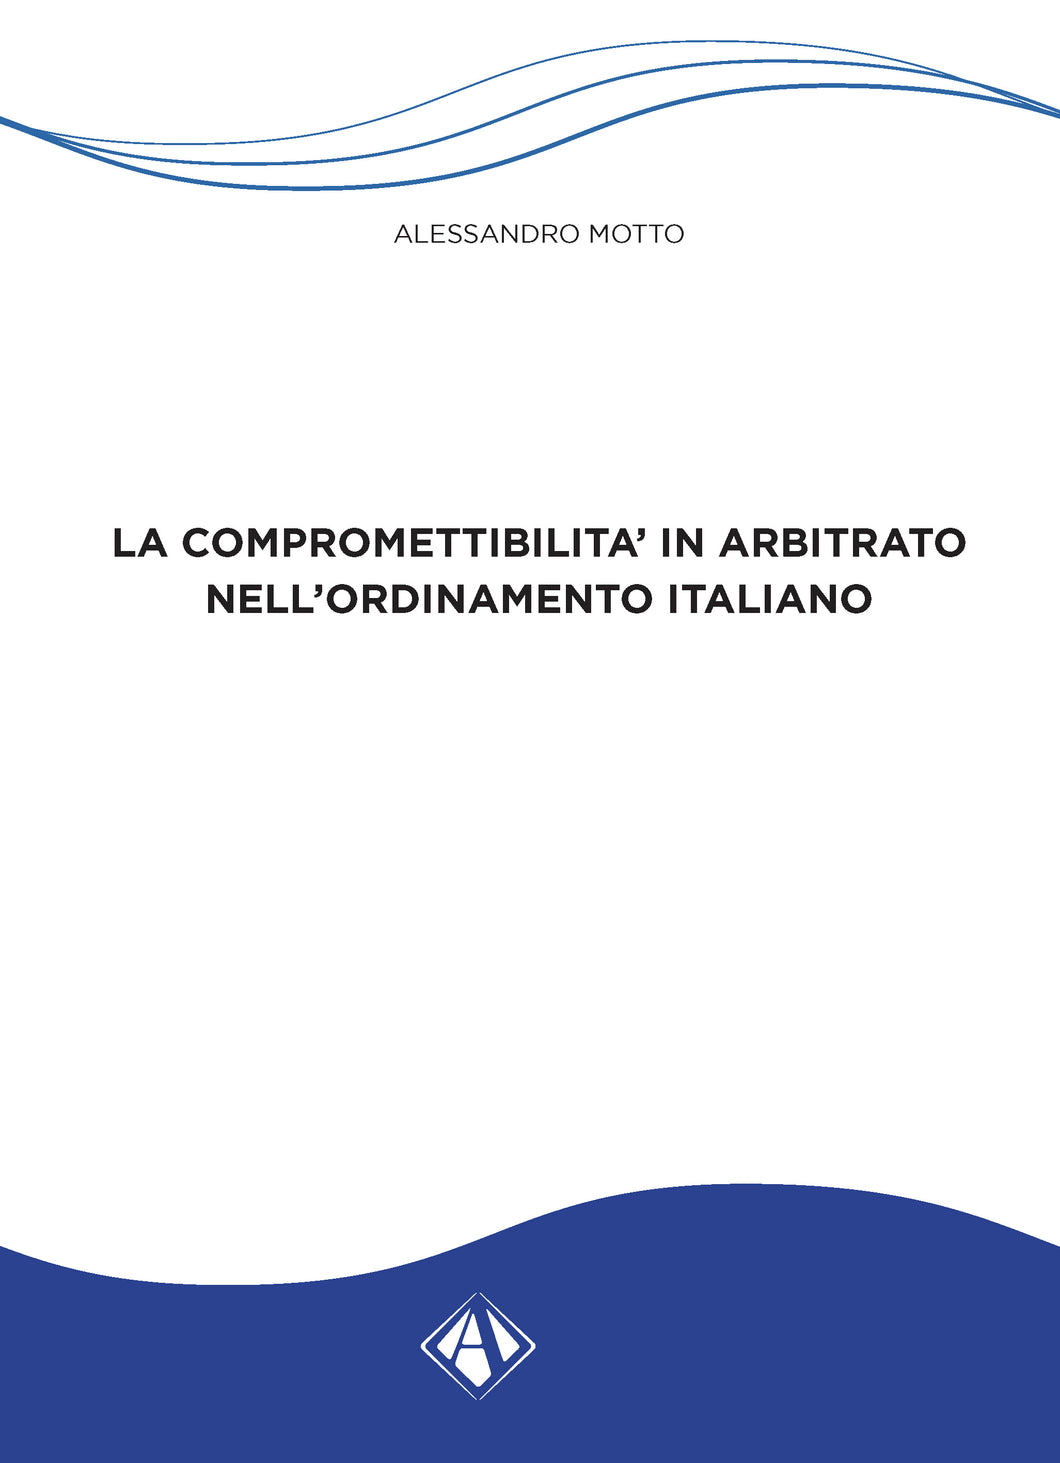 La compromettibilità in arbitrato nell’ordinamento italiano